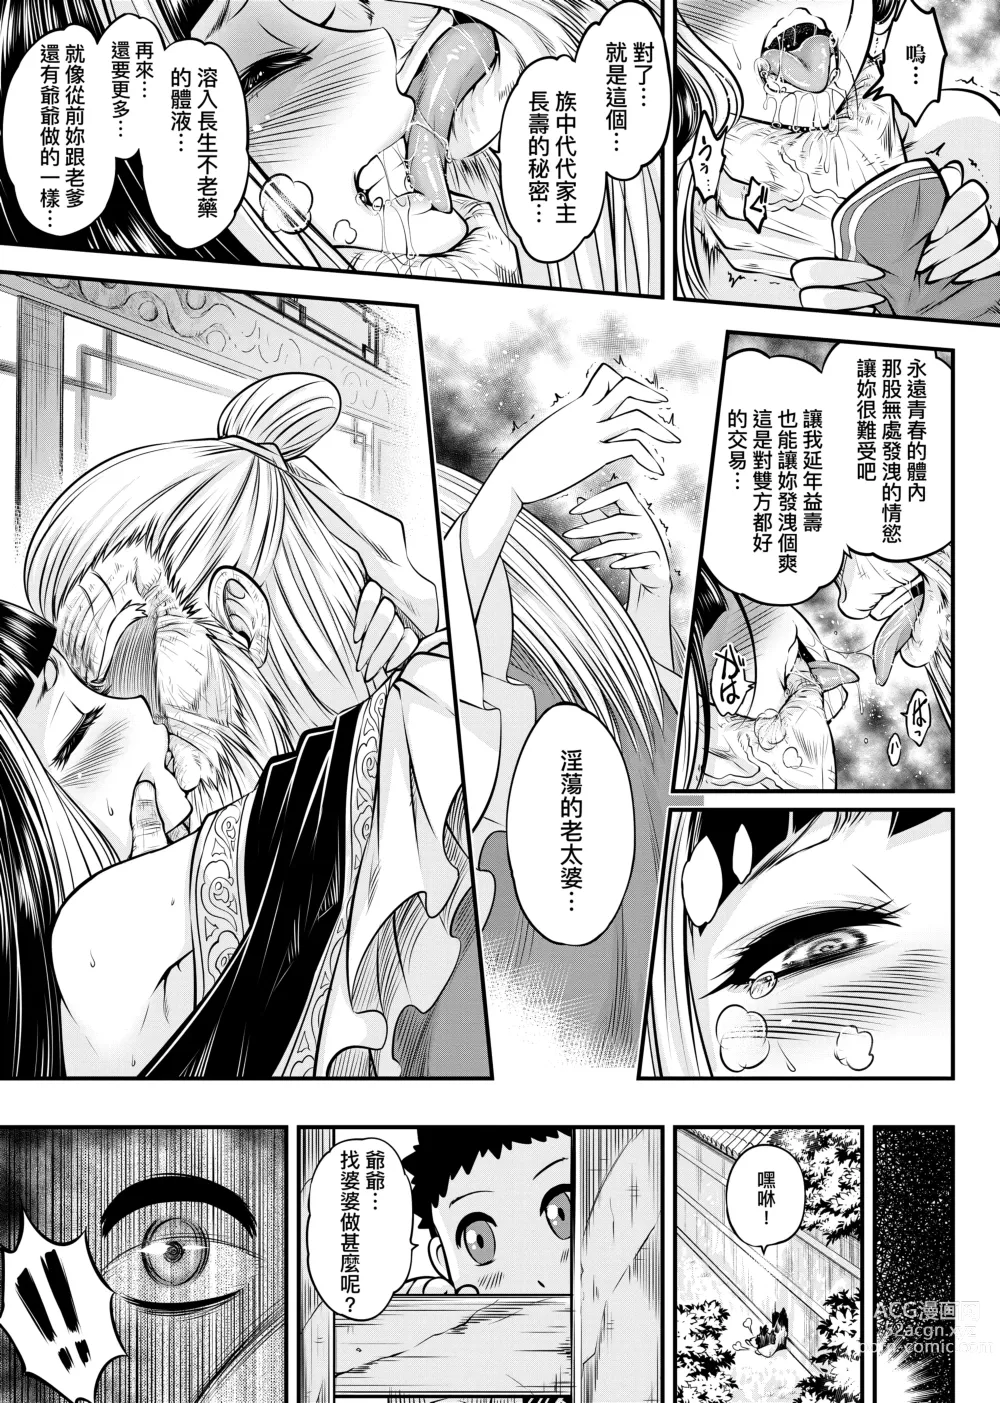 Page 14 of manga 永世流轉 (decensored)